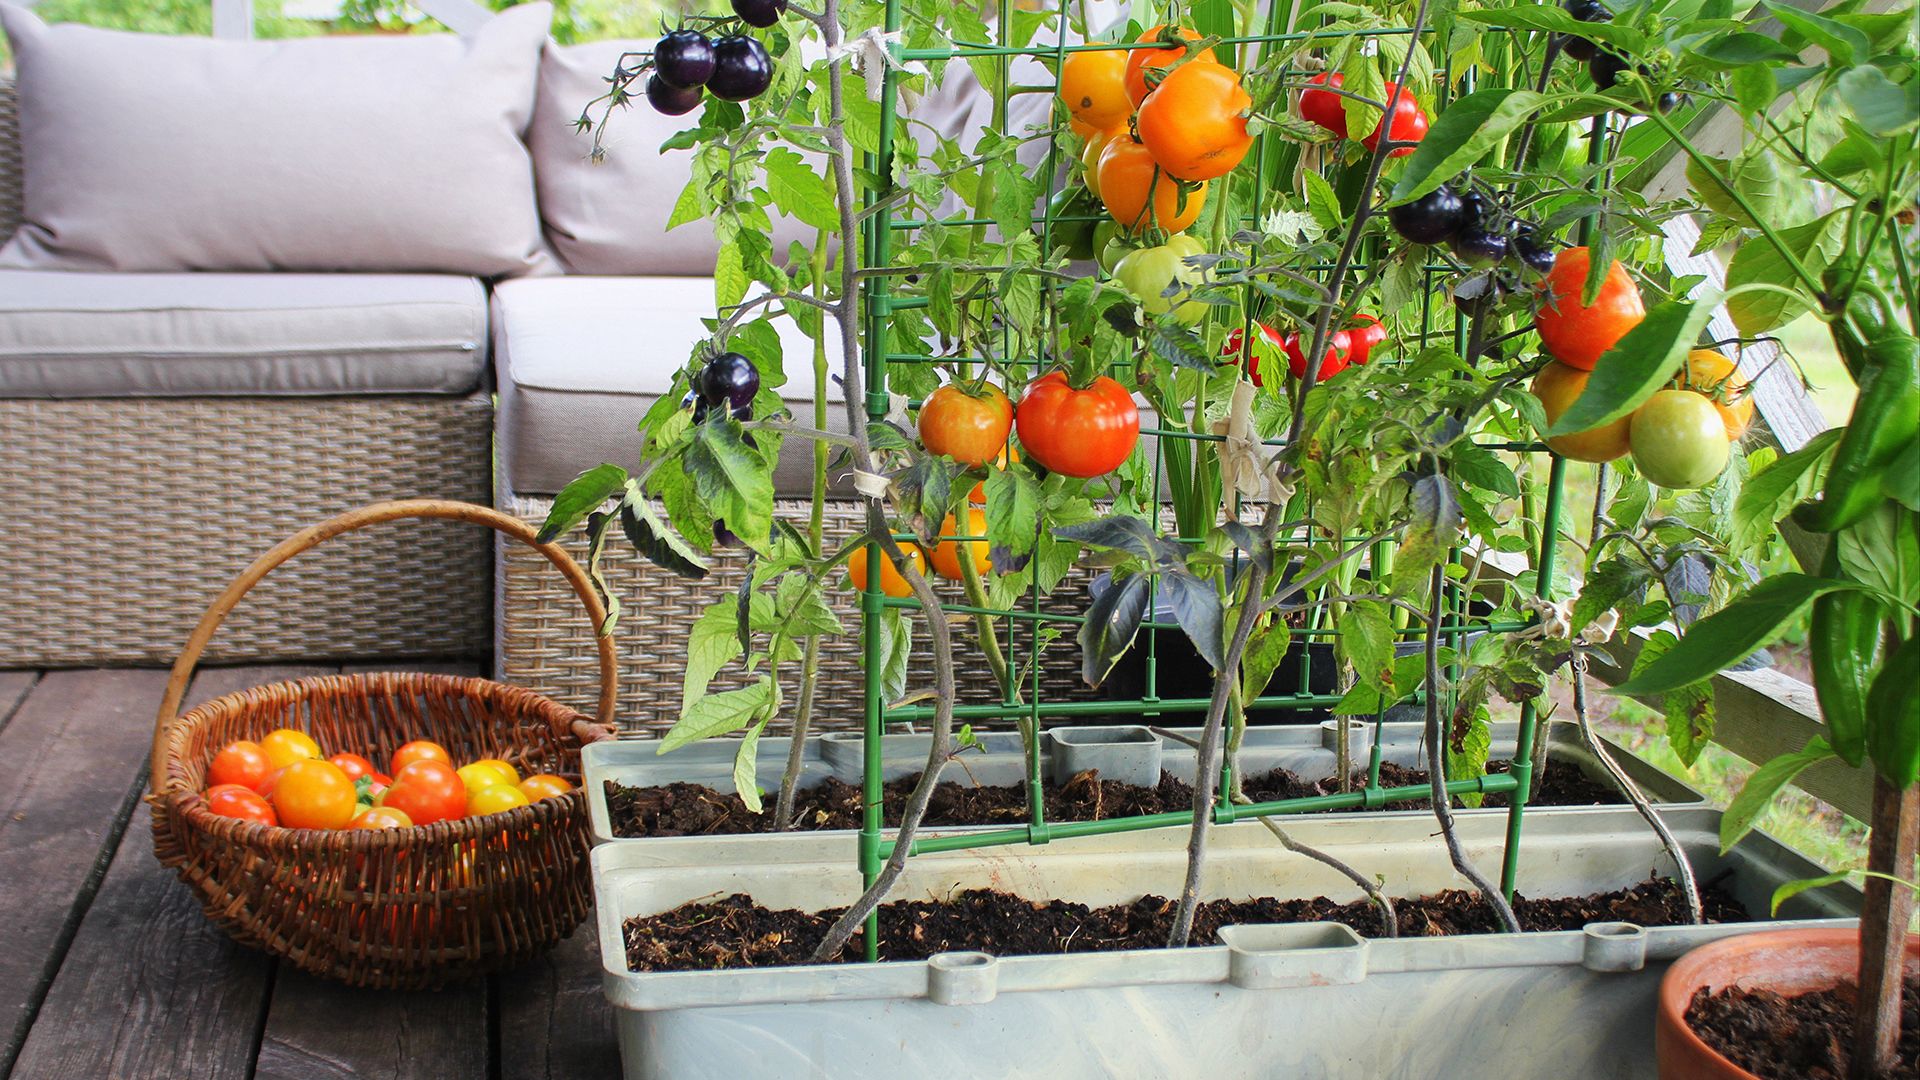 Garden ideas: Easy vegetables to grow in backyard gardens and